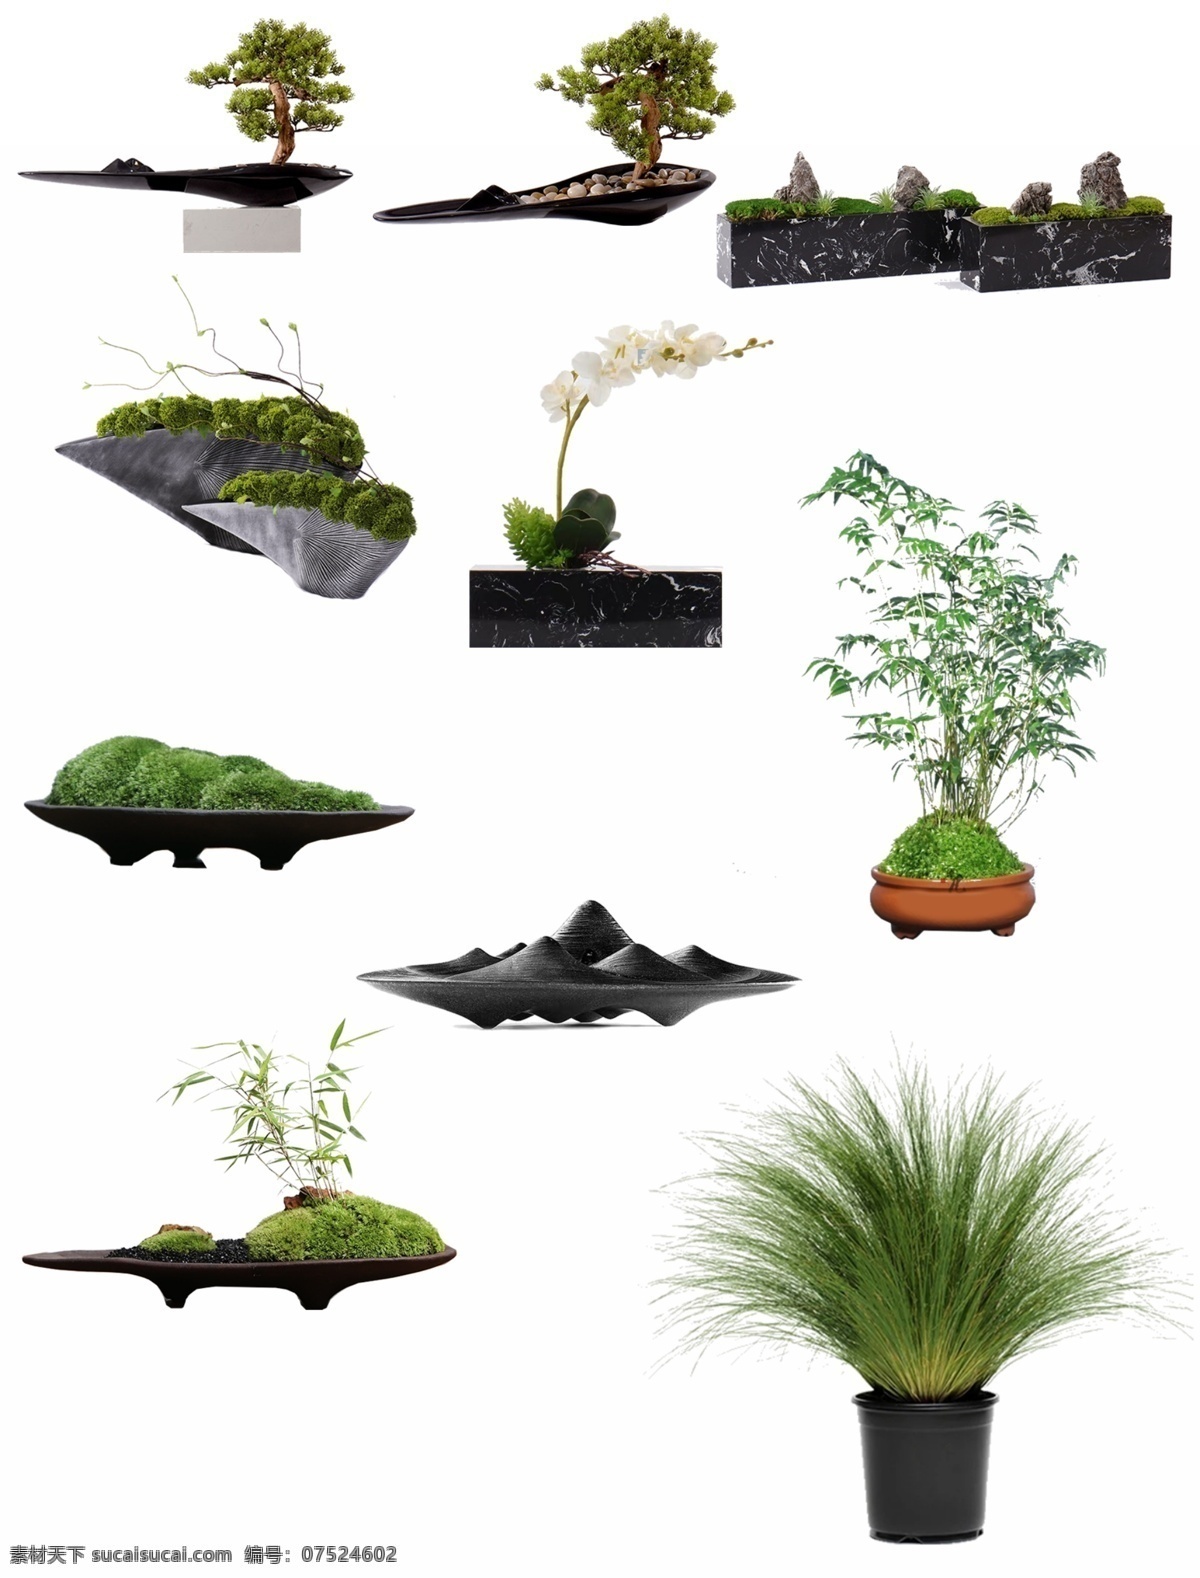 免 抠 高清 植物 盆栽 高清植物 免抠图 室内 盆景 现代盆栽 绿植 环境设计 室内设计